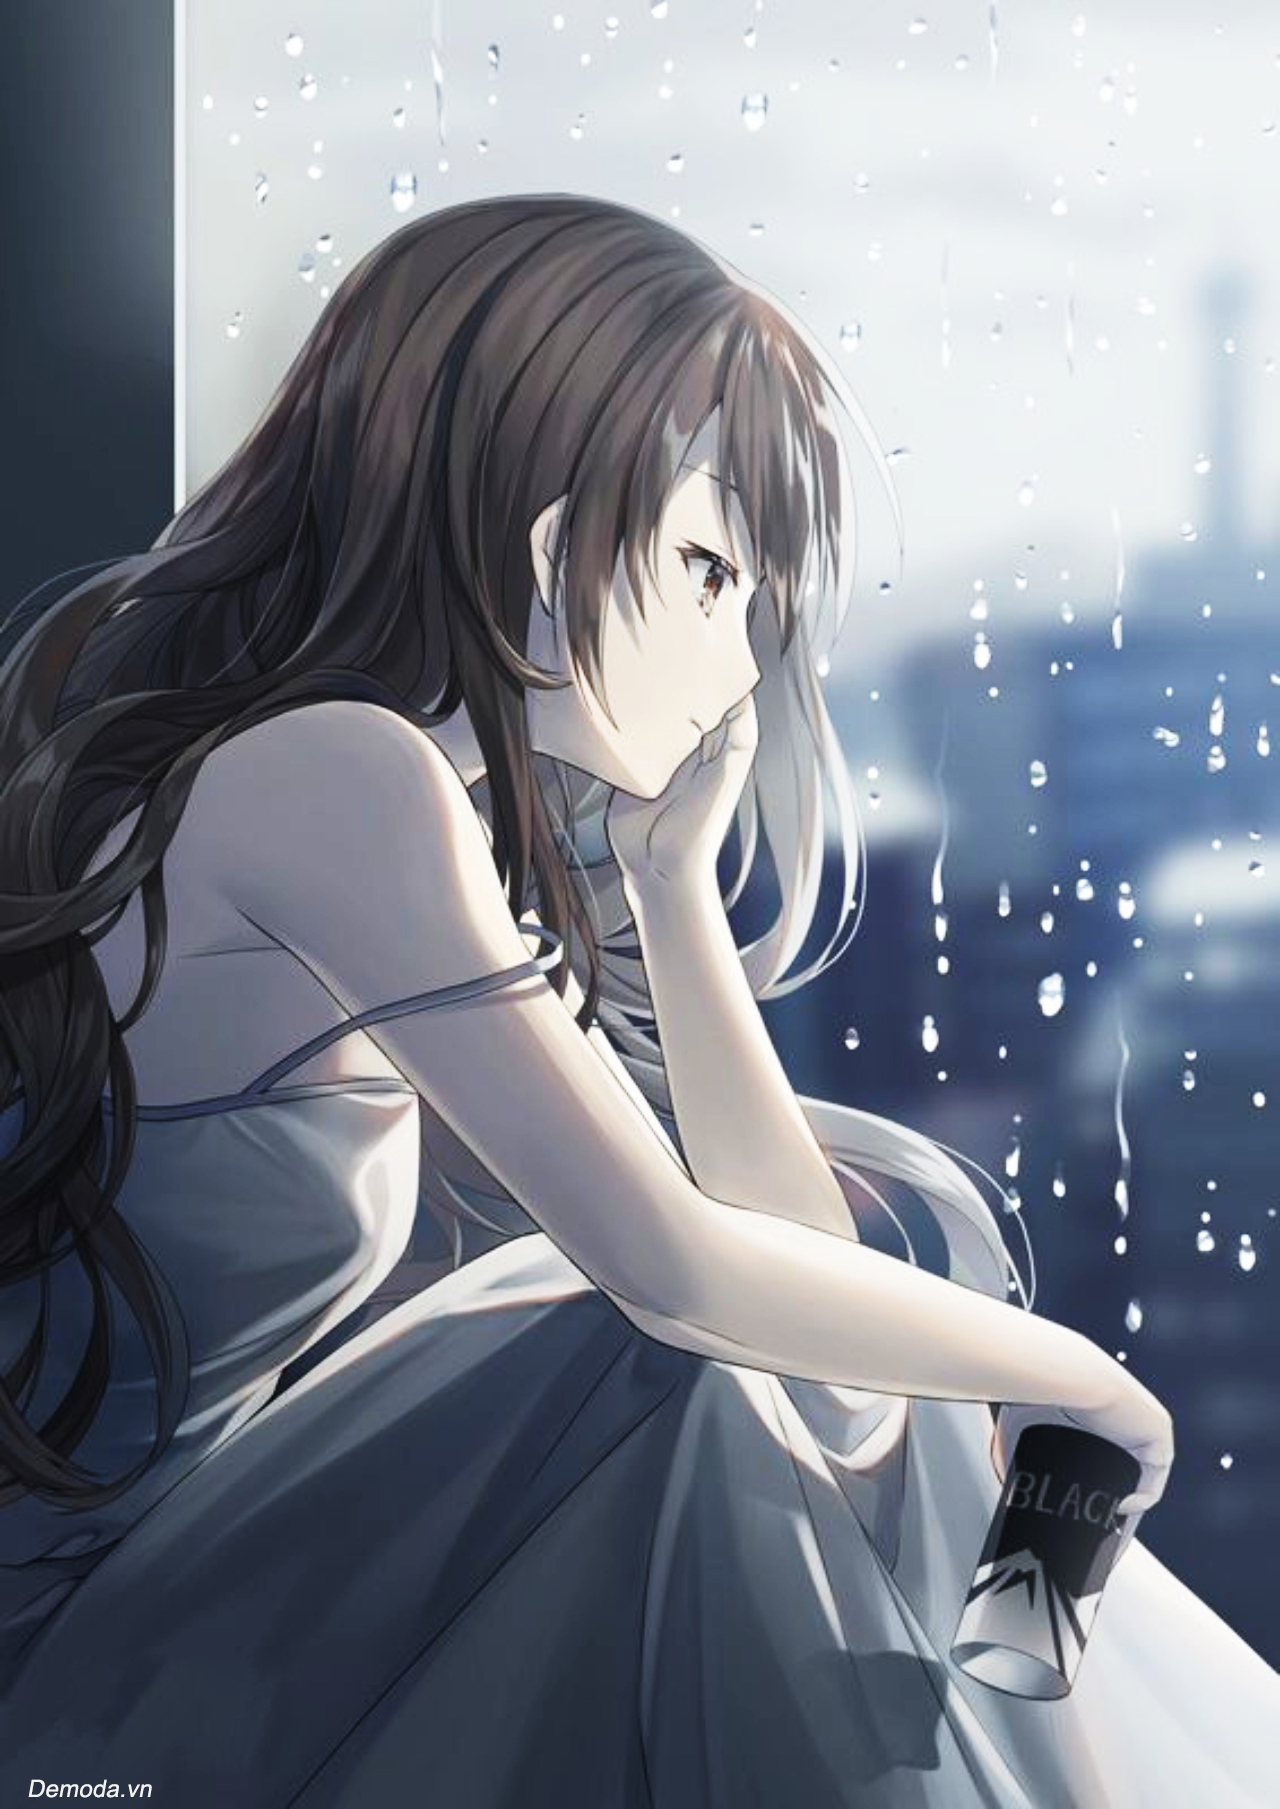 ✓ Tổng hợp 888 ảnh anime nữ buồn khóc tới đau lòng | photographer.edu.vn